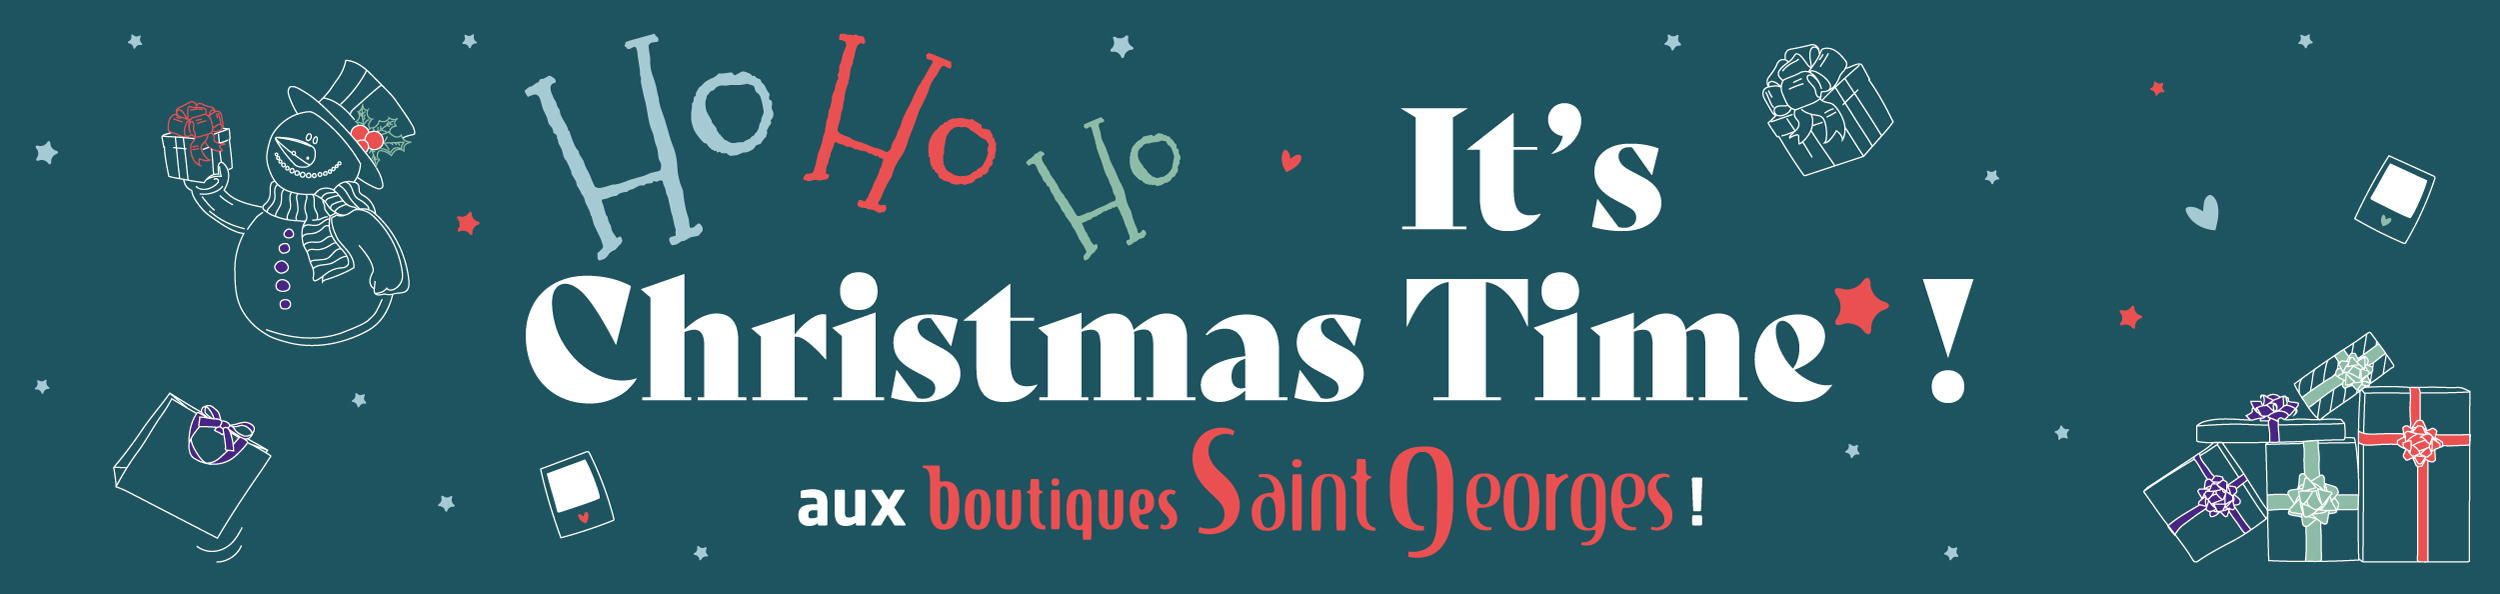 Christmas Time* : La féérie de Noël arrive aux Boutiques Saint Georges !